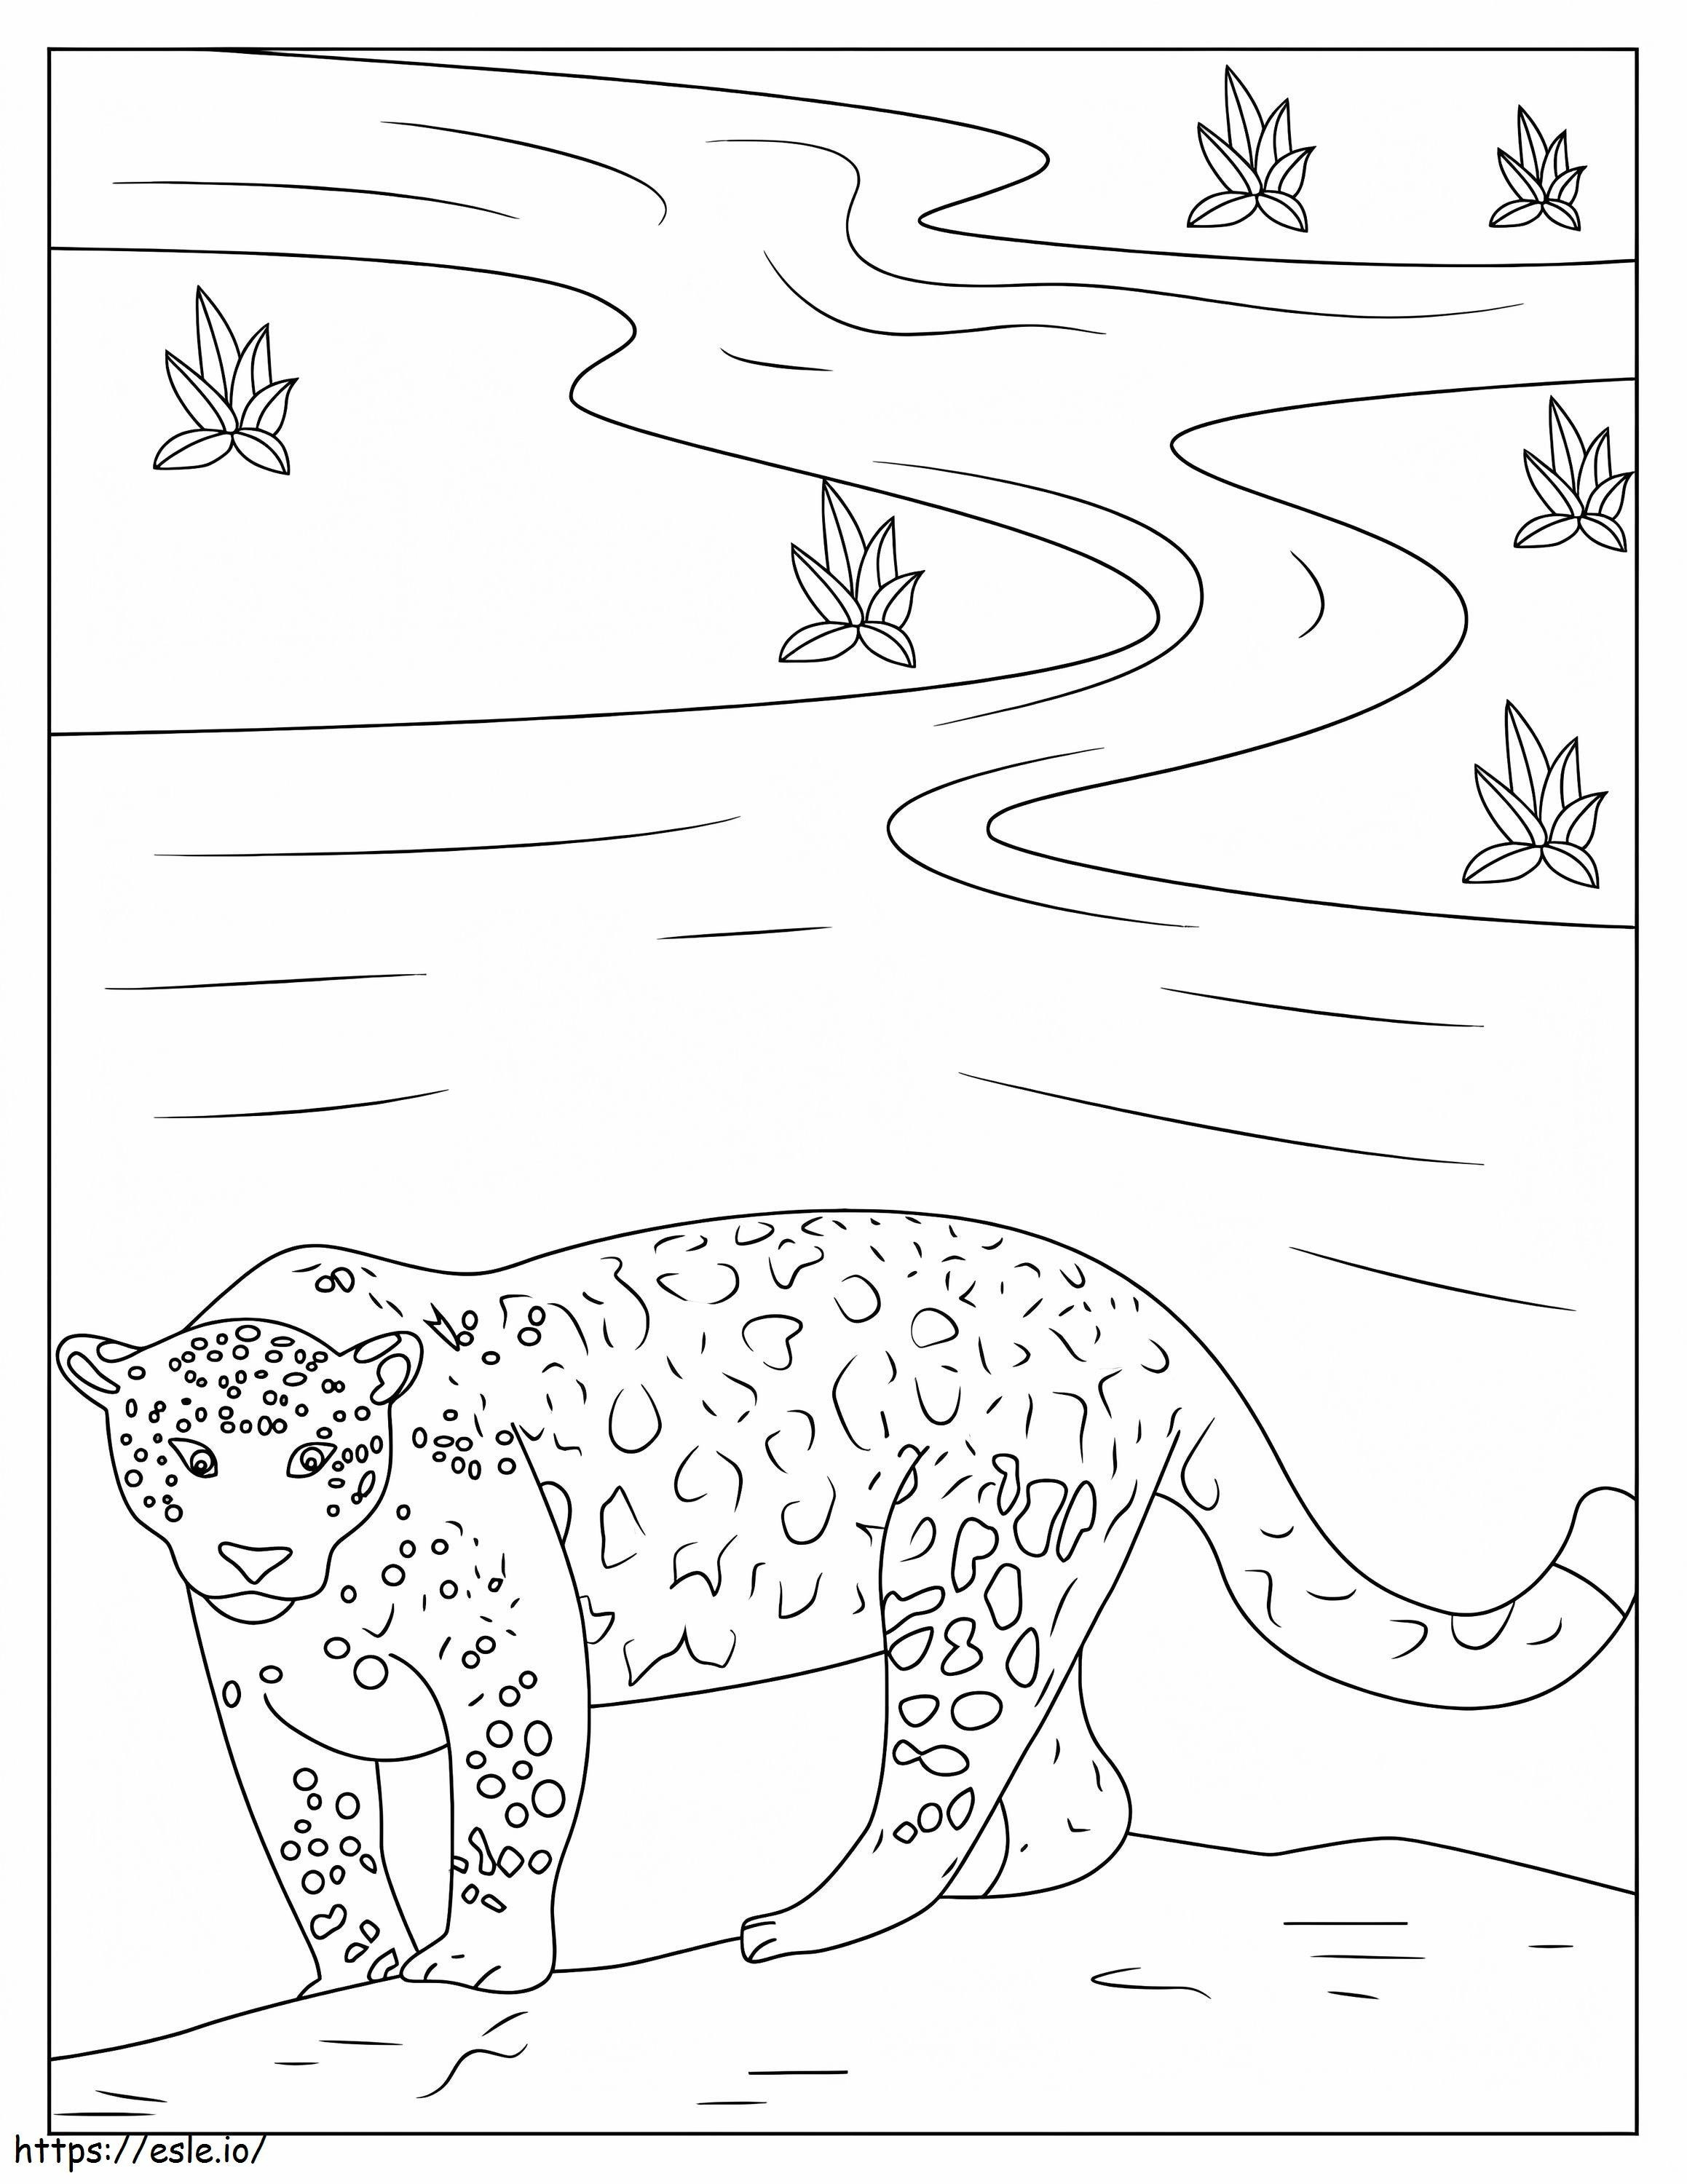 Great Jaguar coloring page